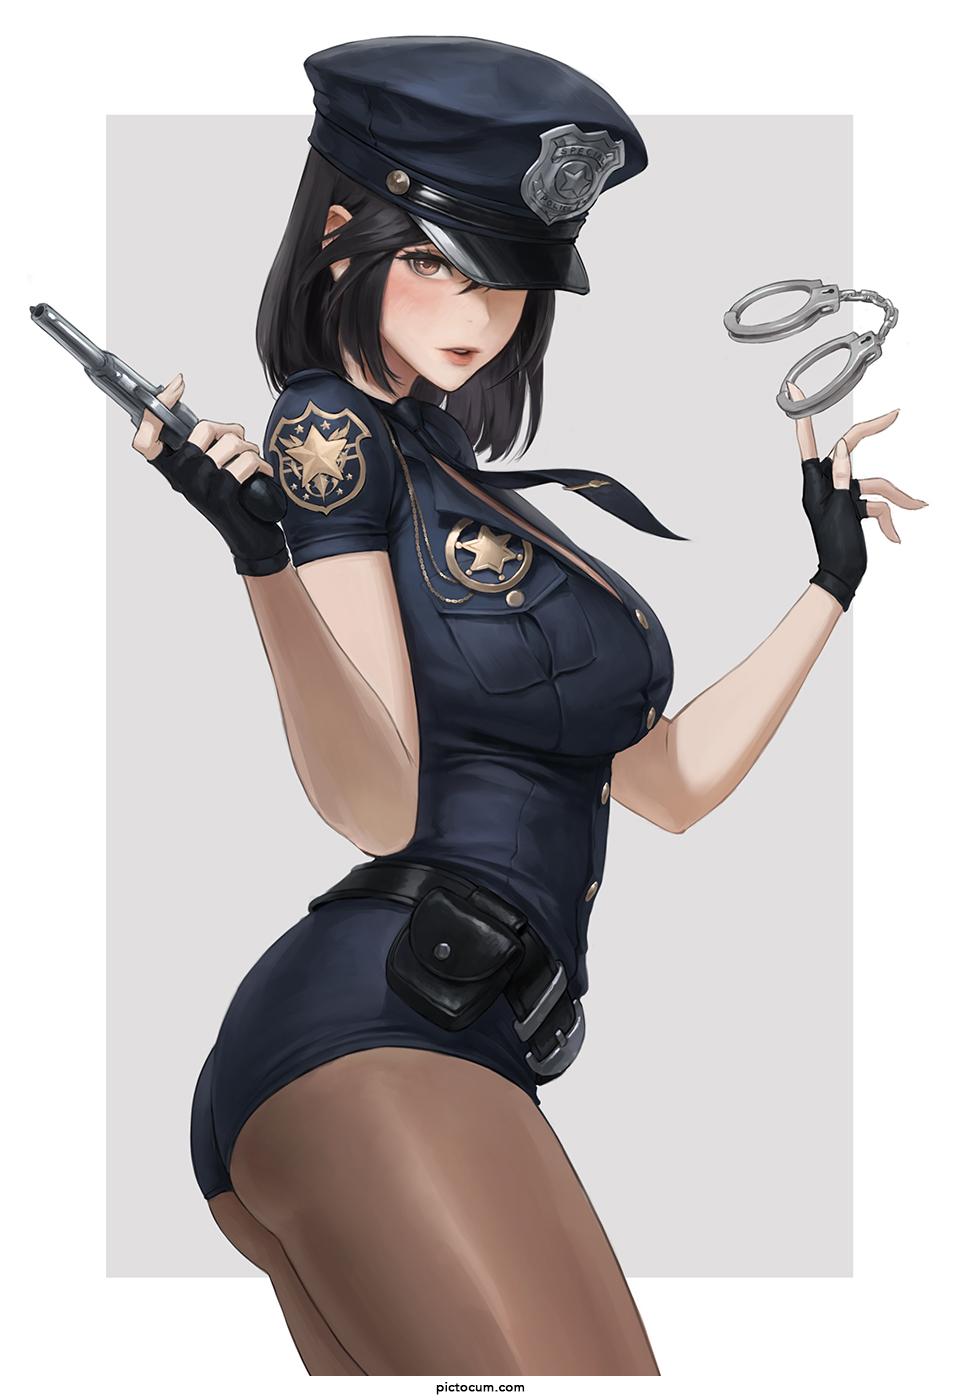 Police Girl